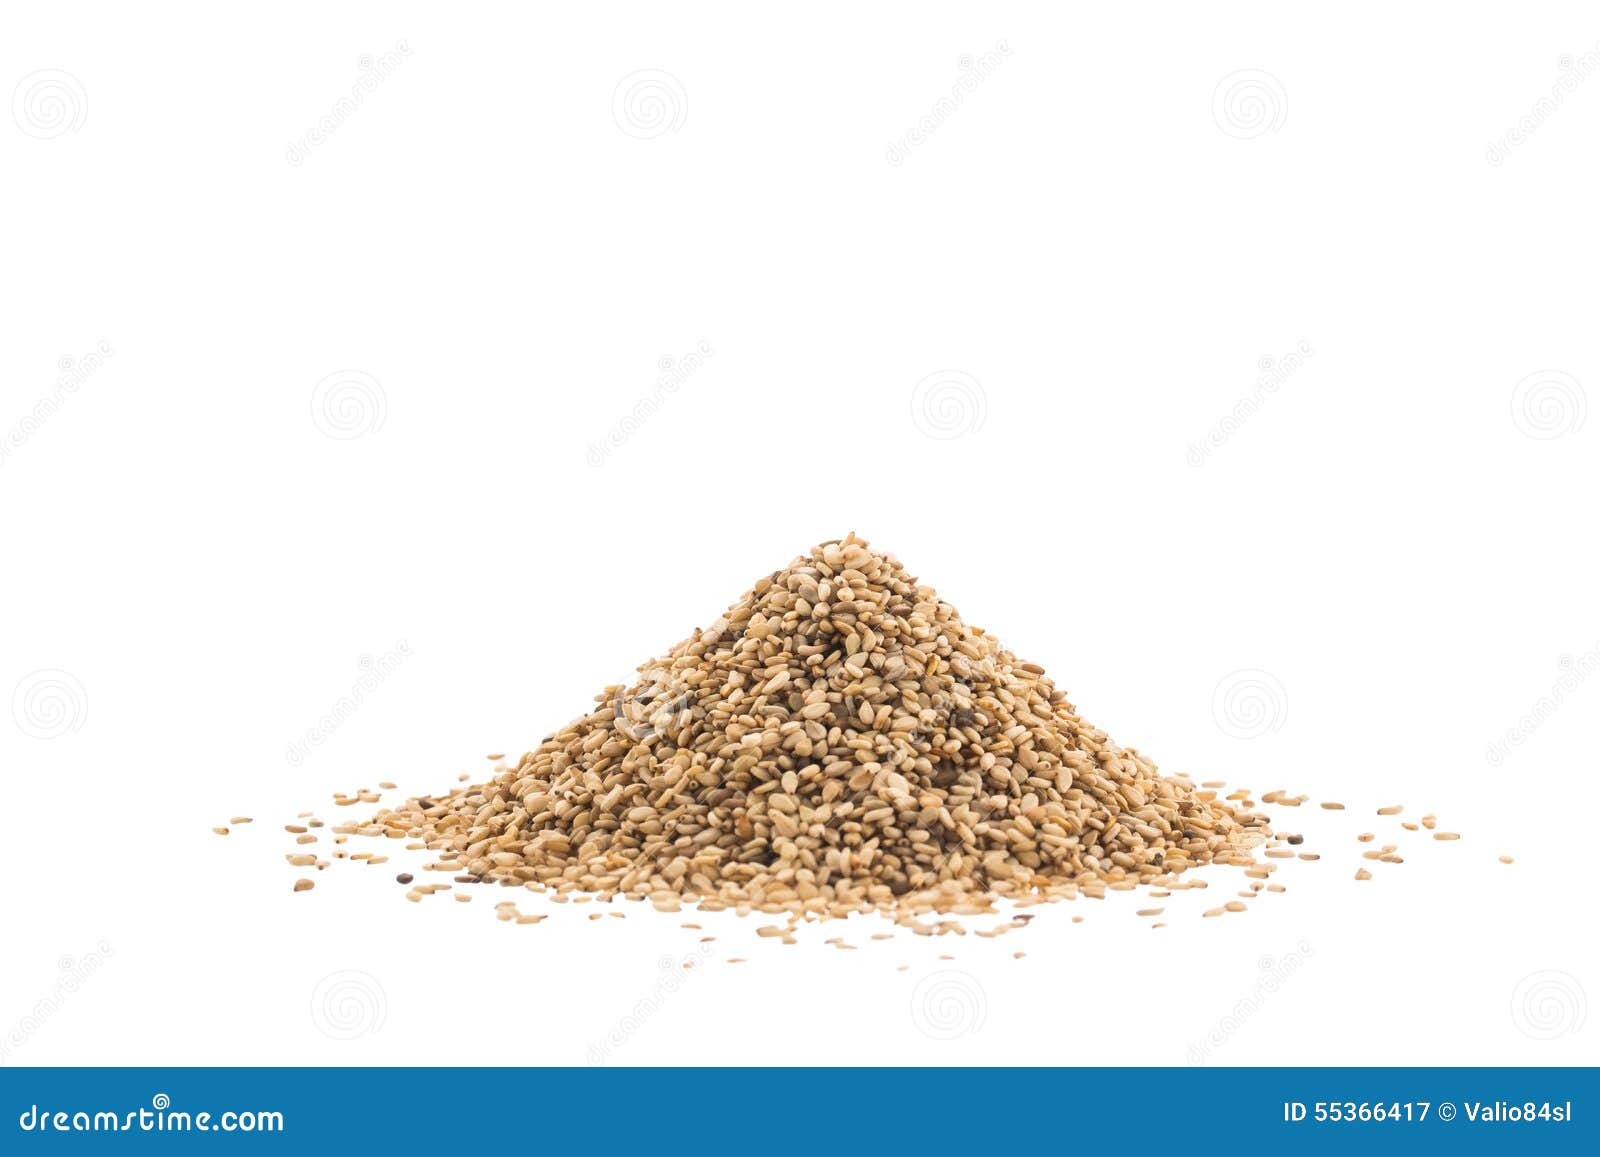 pile of sesame or til seeds on white